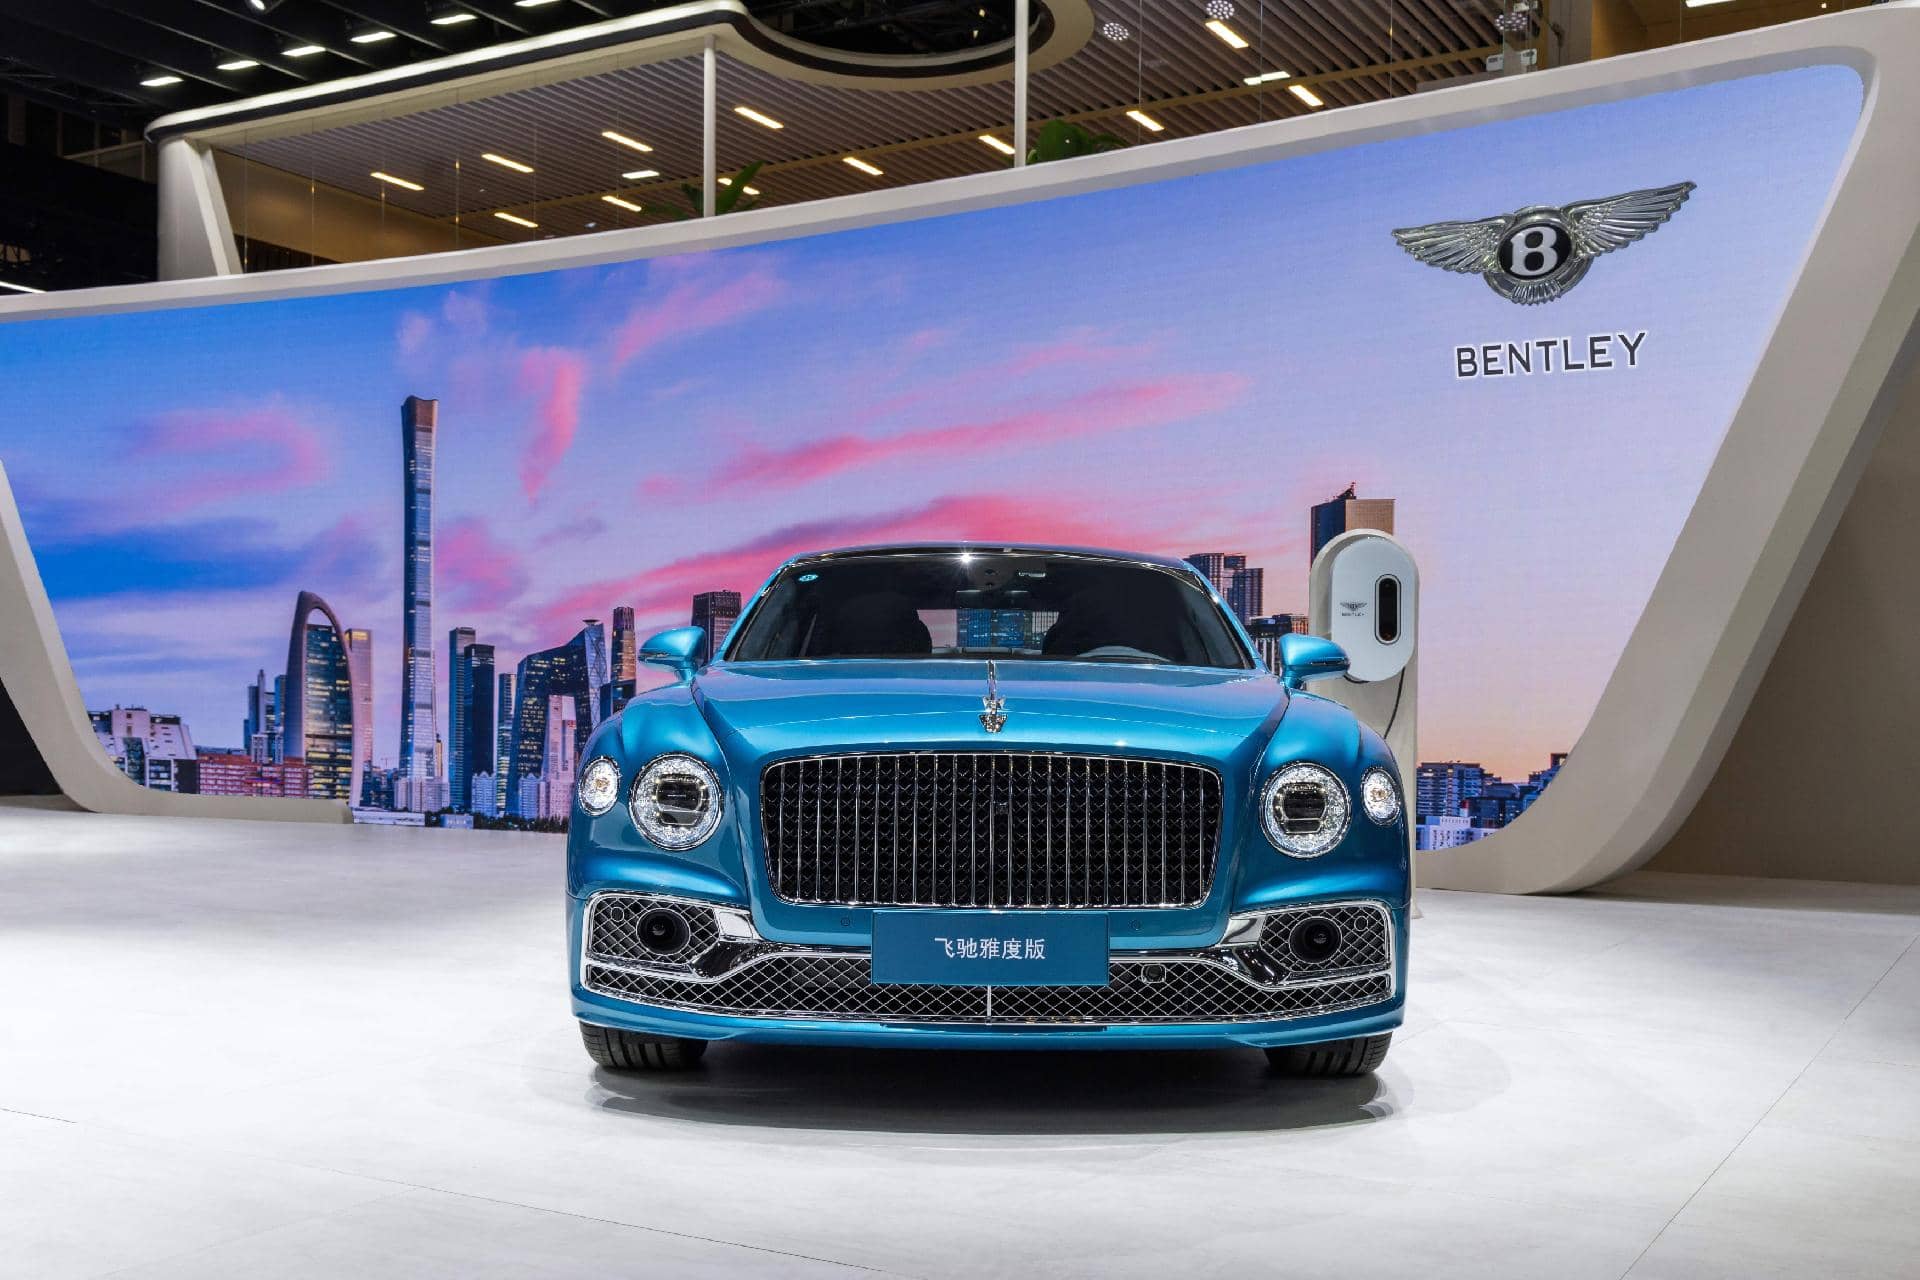 Lujoso Bentley presentado en Beijing, destaca por su icónica parrilla y faros LED.